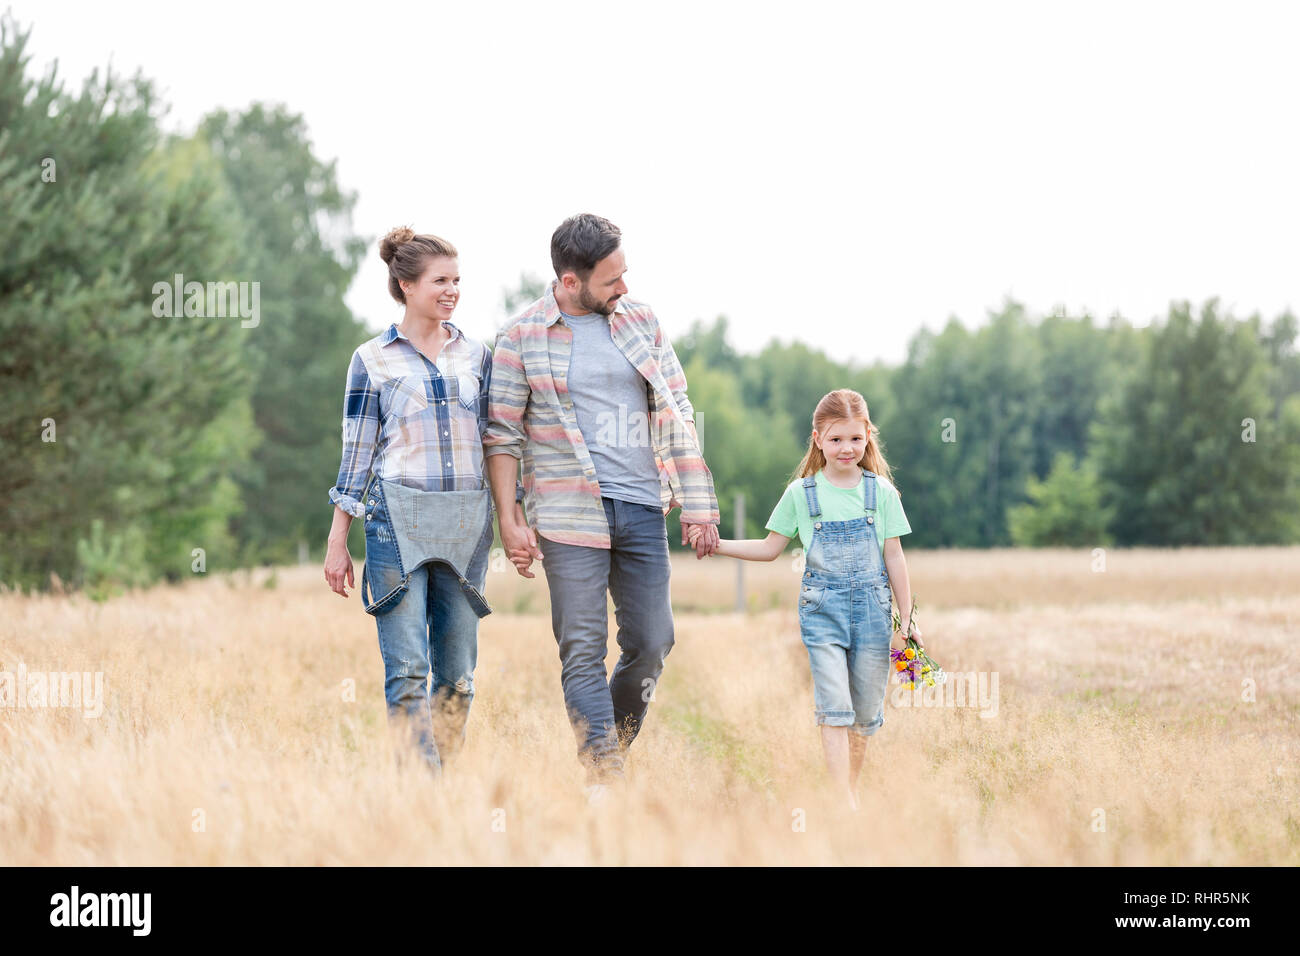 Family walking on grassy field contre ciel à farm Banque D'Images